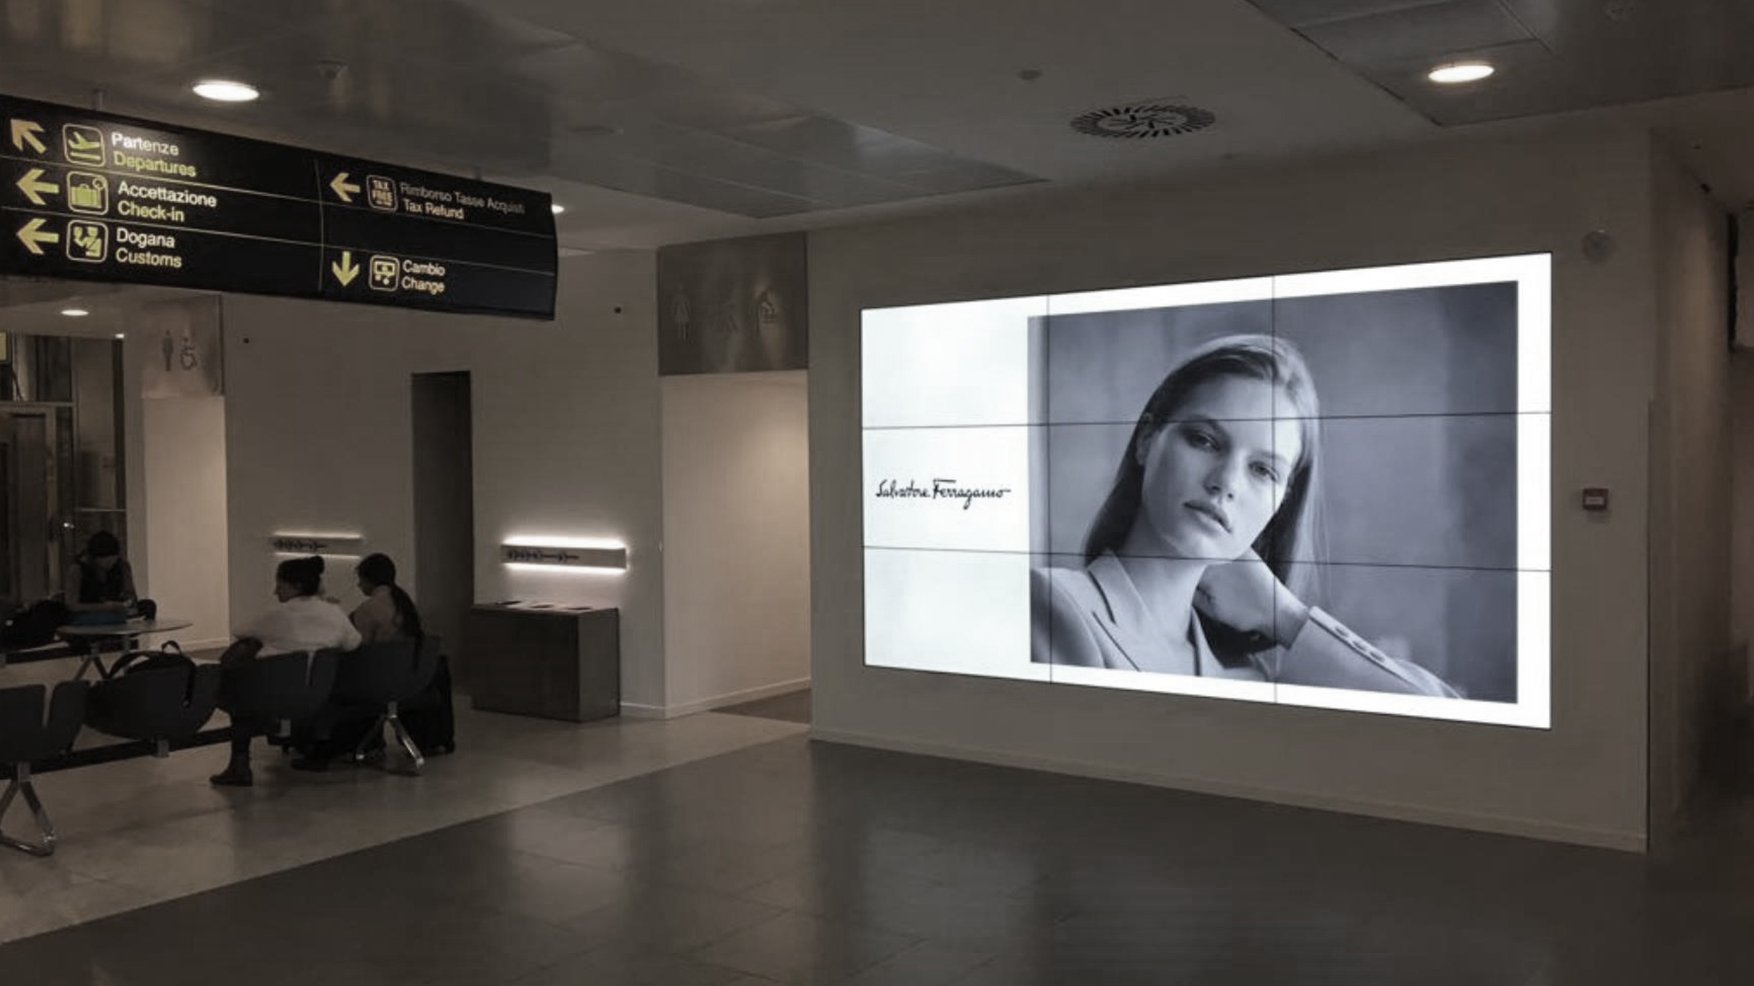 Videowall di grande impatto pubblicitario presso l'aeroporto di Firenze.